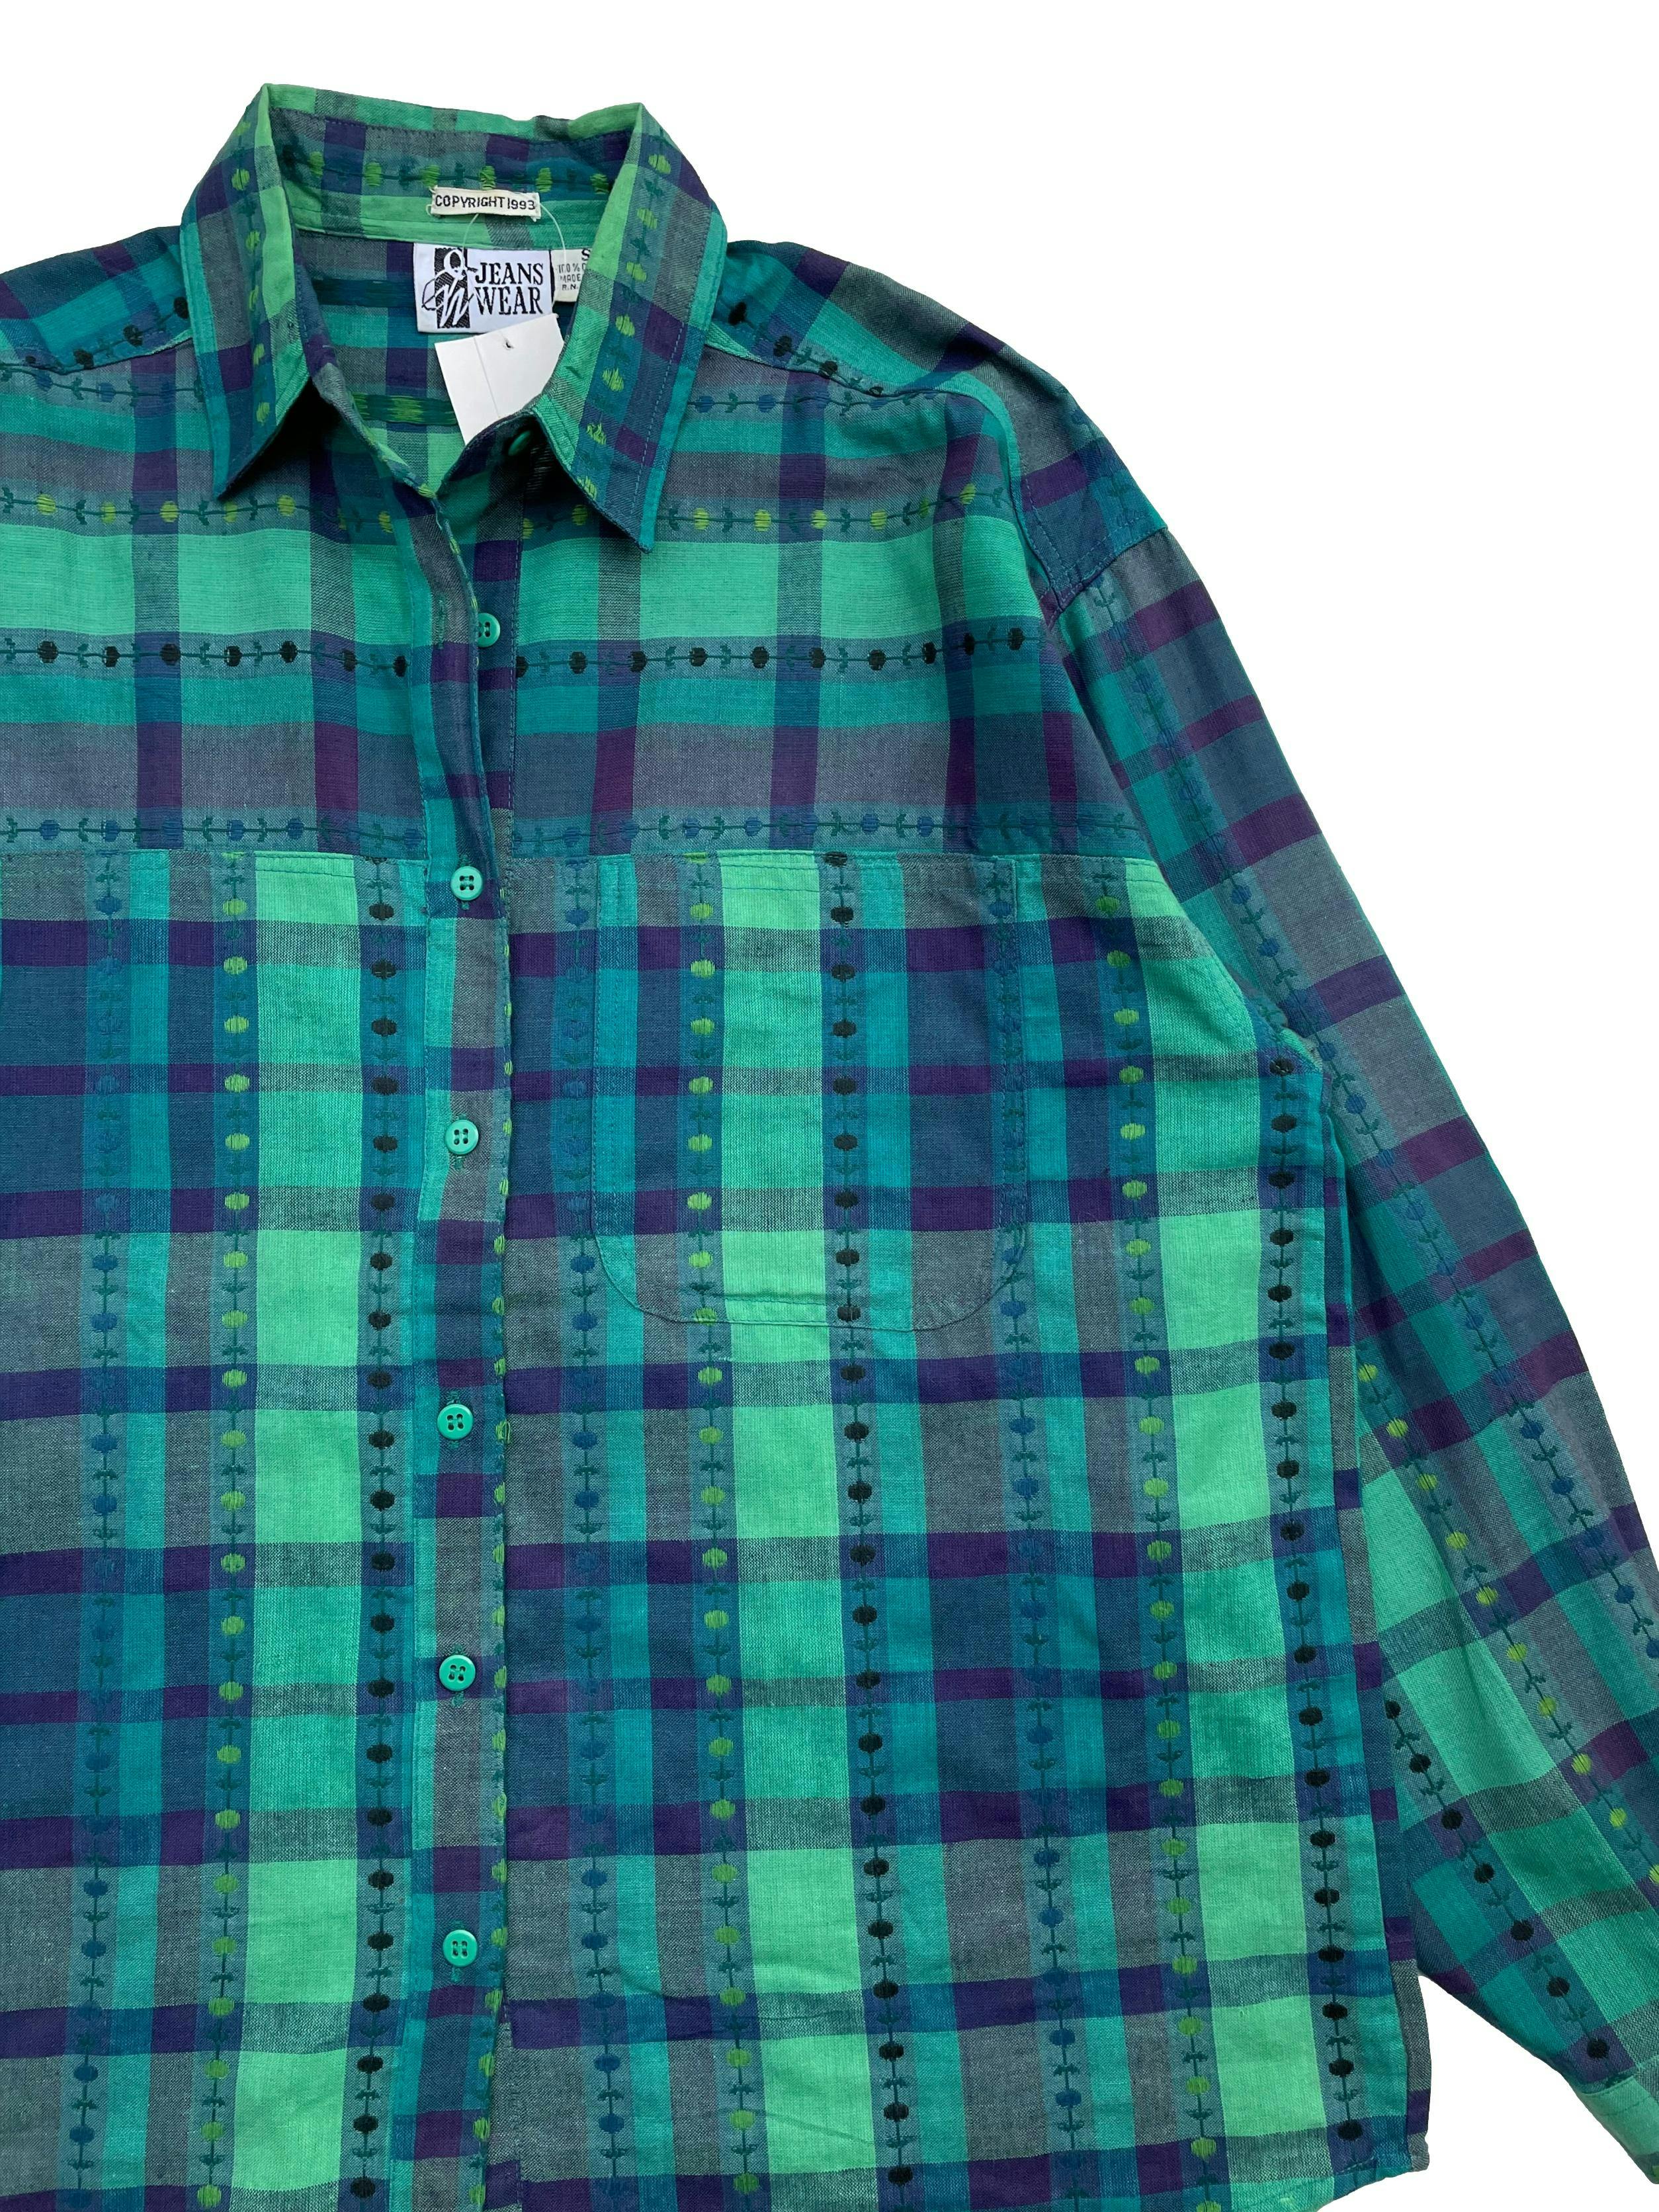 Blusa vintage a cuadros en tonos verdes y azules, tela 100% algodón, con bolsillos solapa frontales. Largo 70 cm.